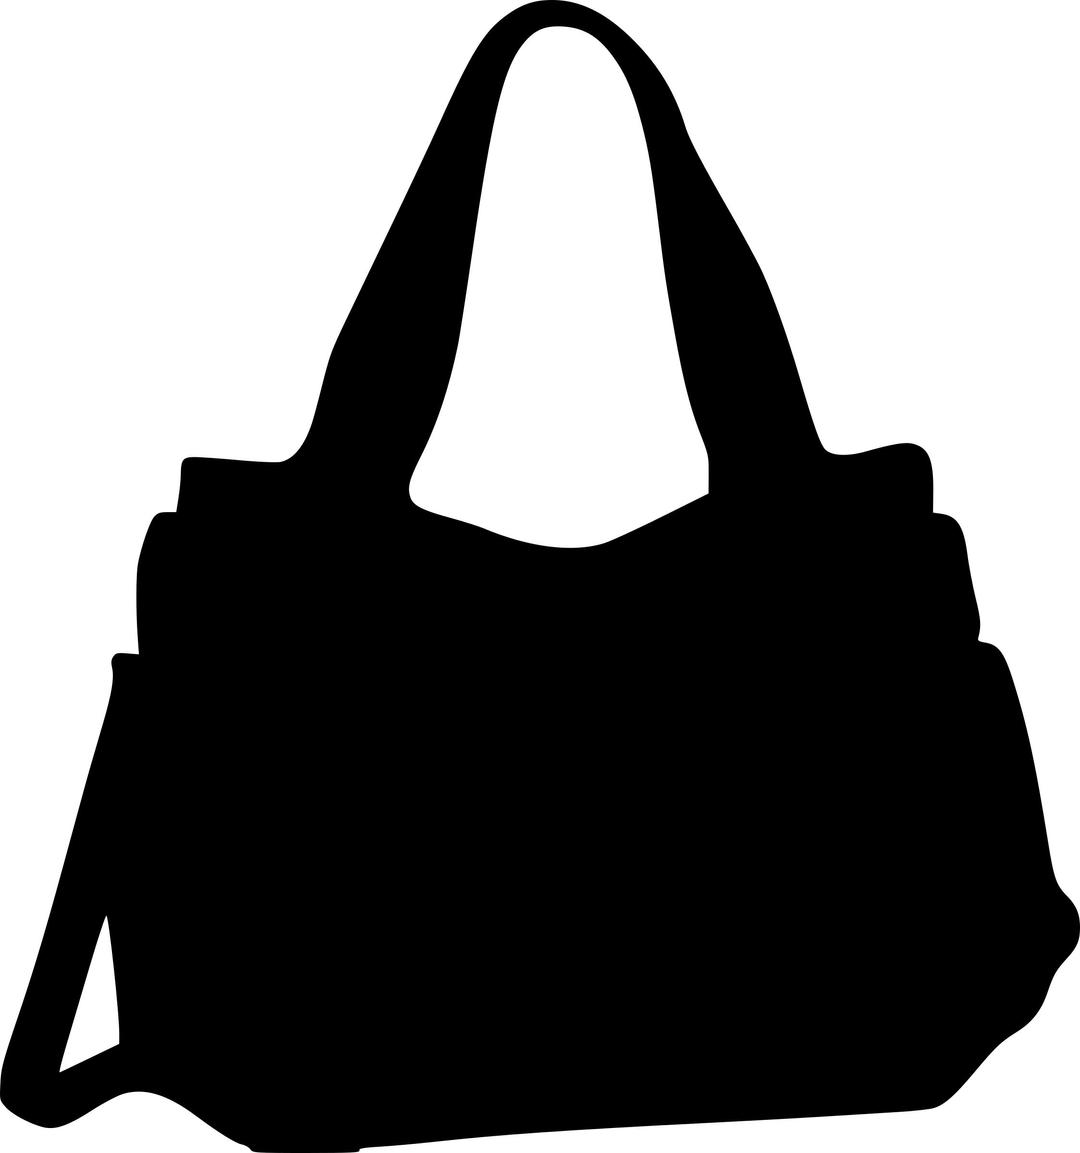 Ceso orange handbag silhouette png transparent